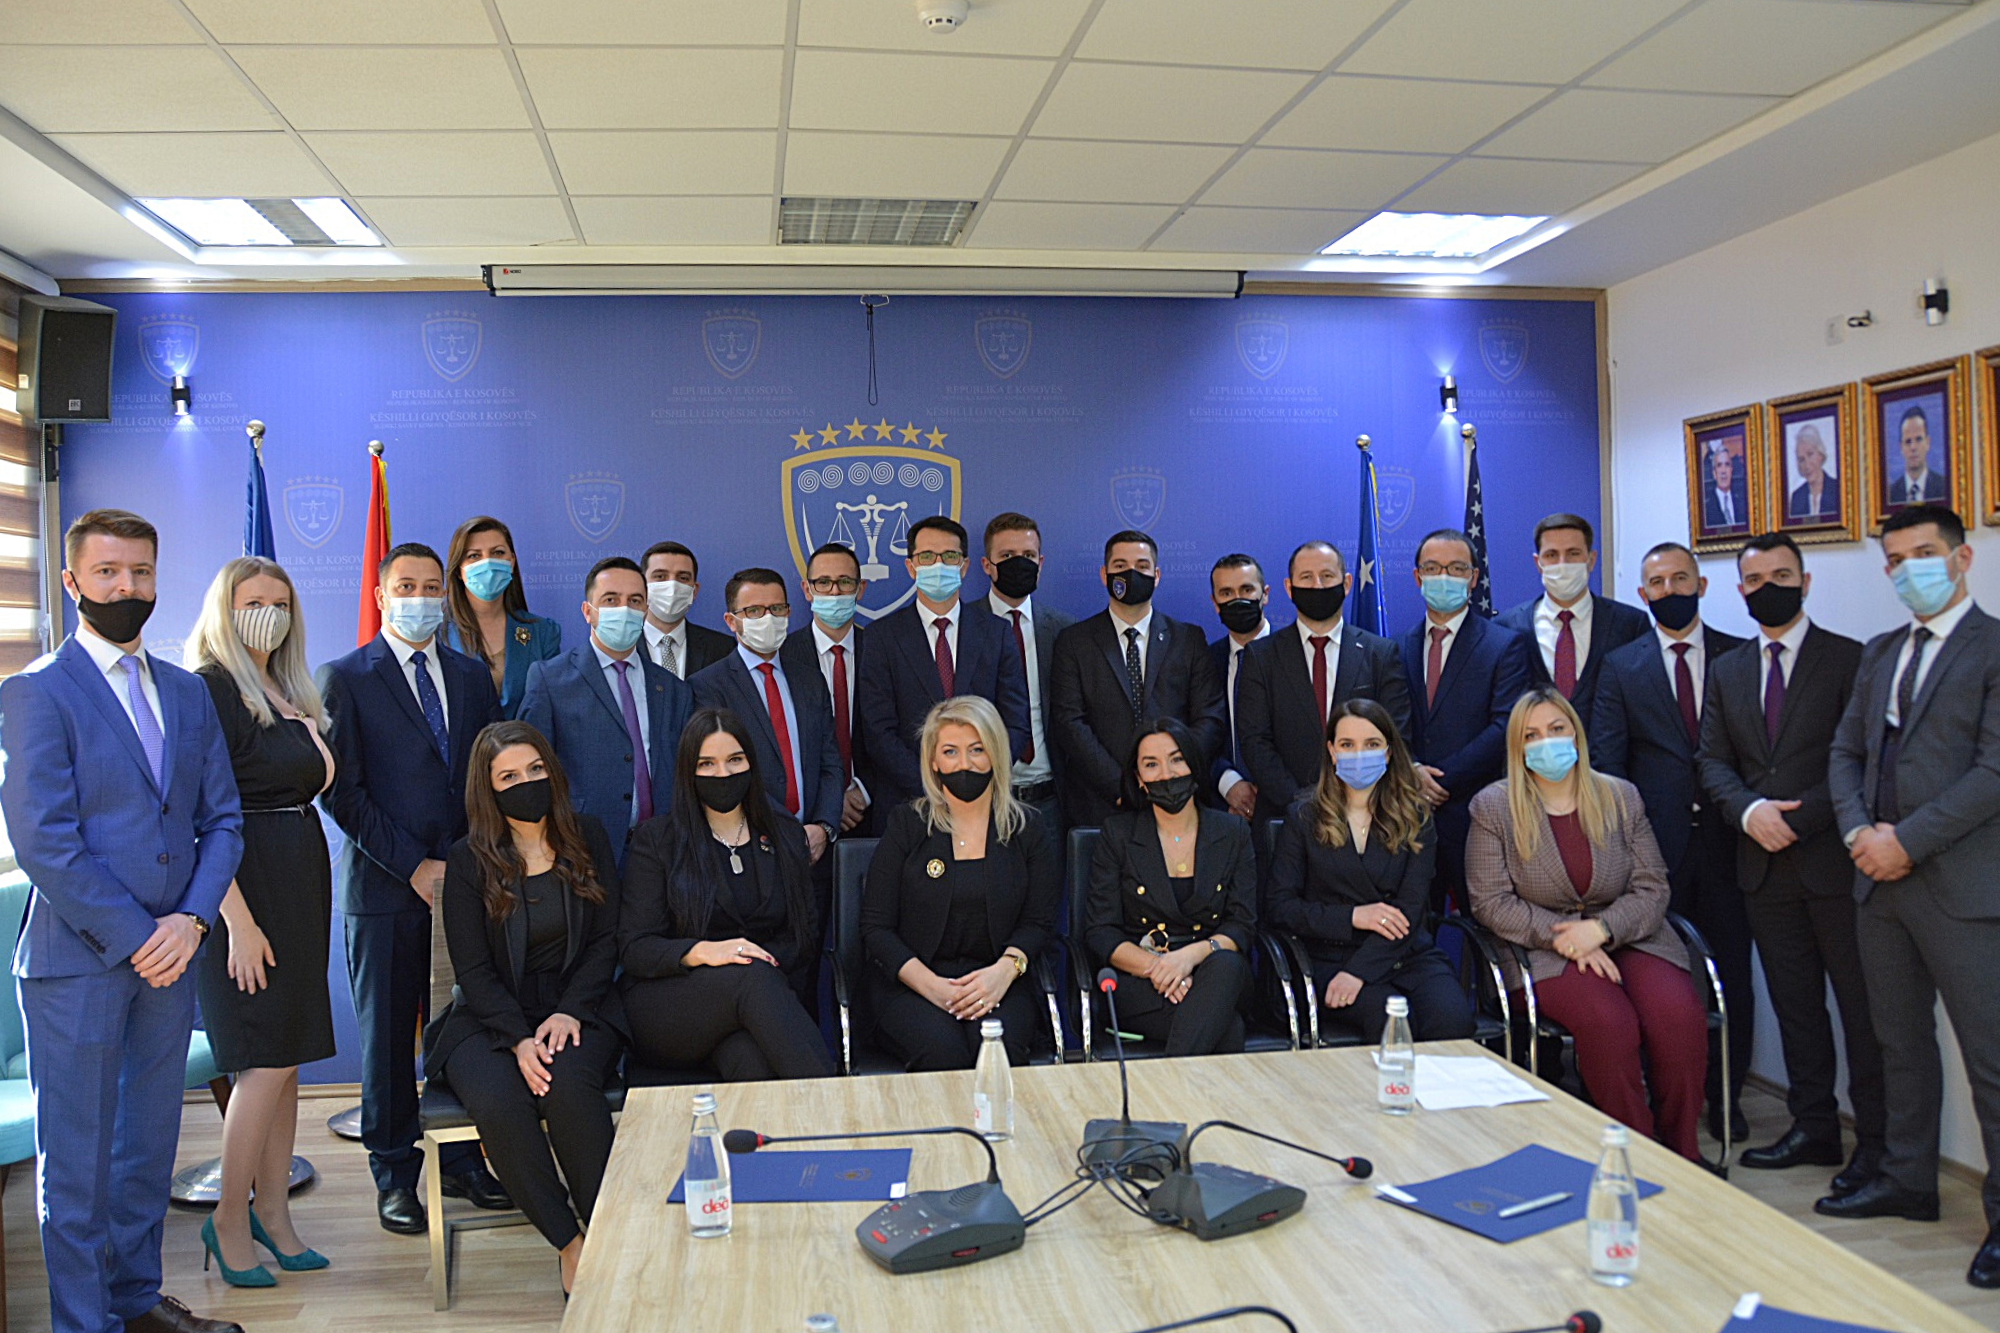 U.D. Presidentja Vjosa Osmani dekreton 23 gjyqtarë të rinj